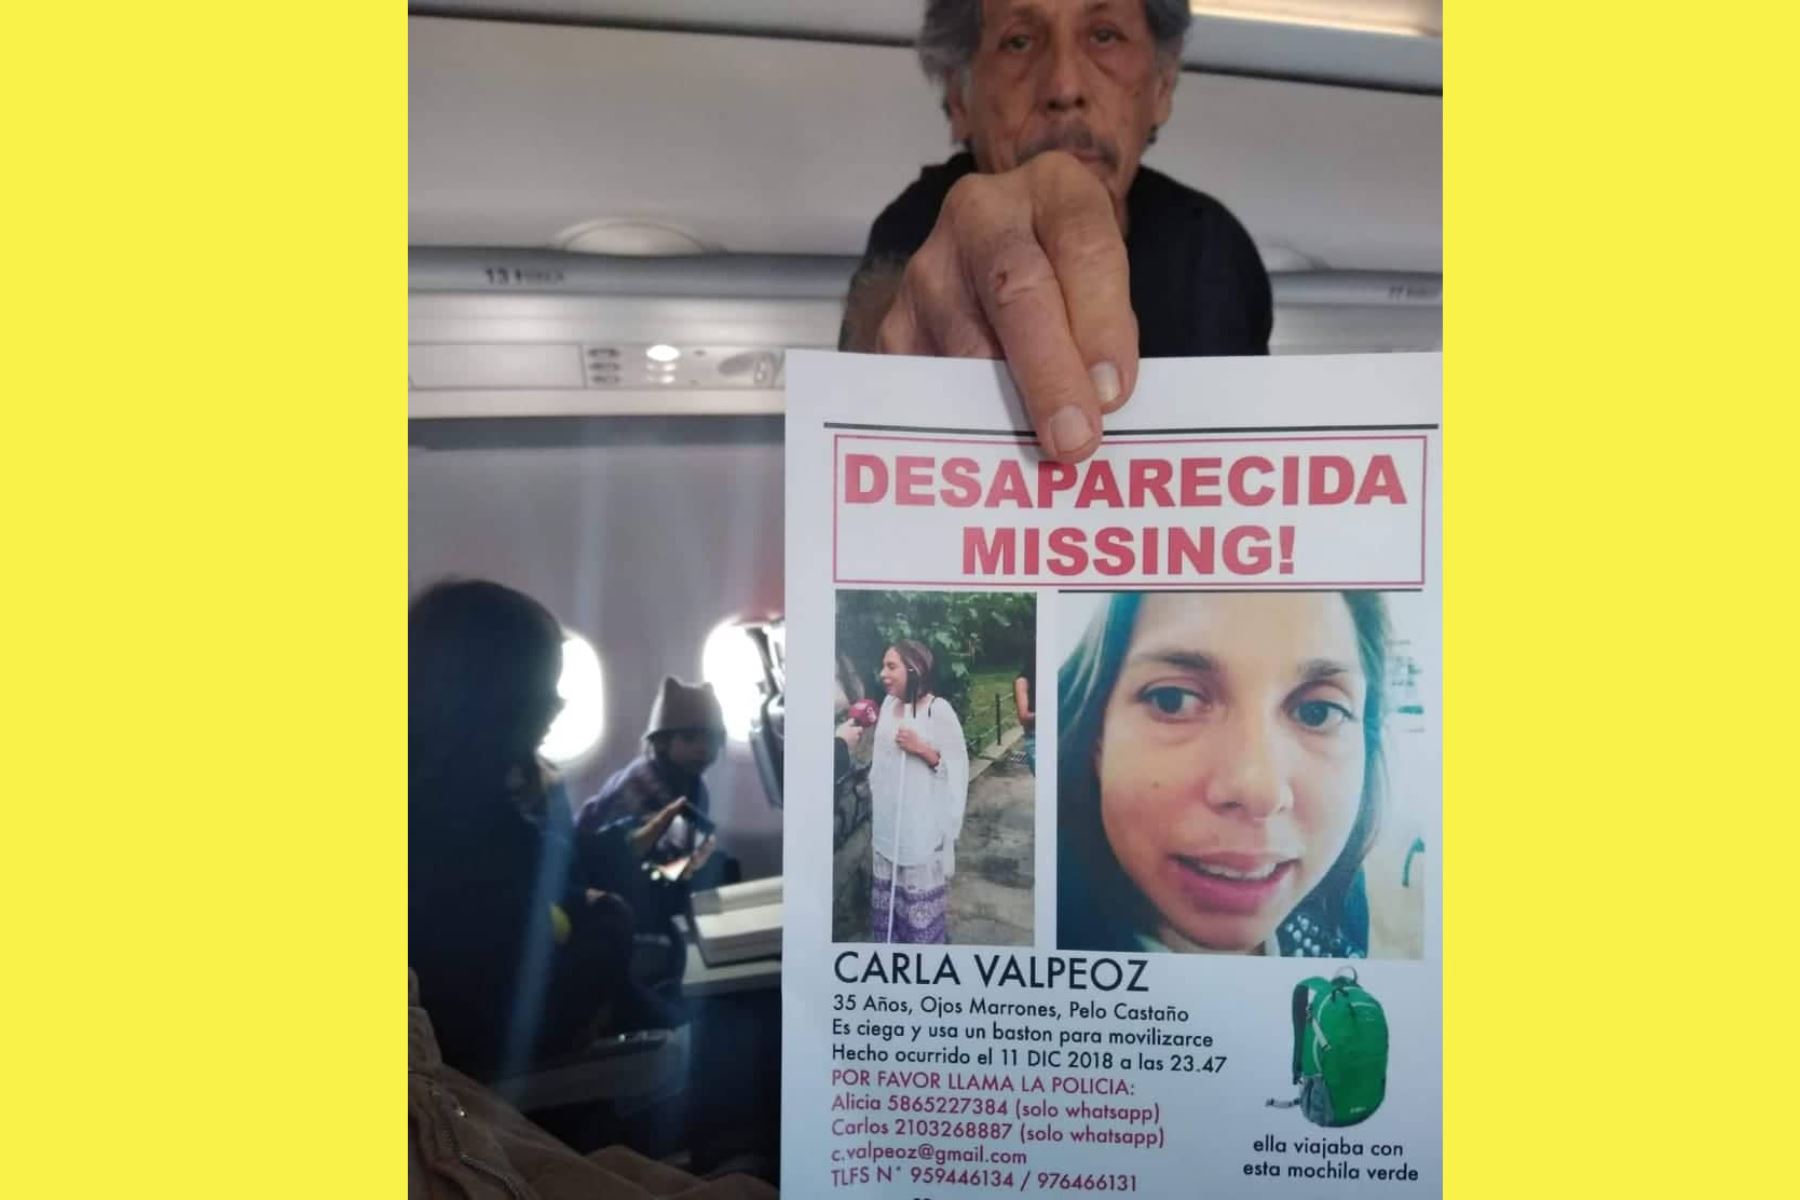 Carlos López Valpeoz, padre de la turista con discapacidad visual extraviada llegó al Cusco para sumarse a las labores de búsqueda. Foto: Facebook